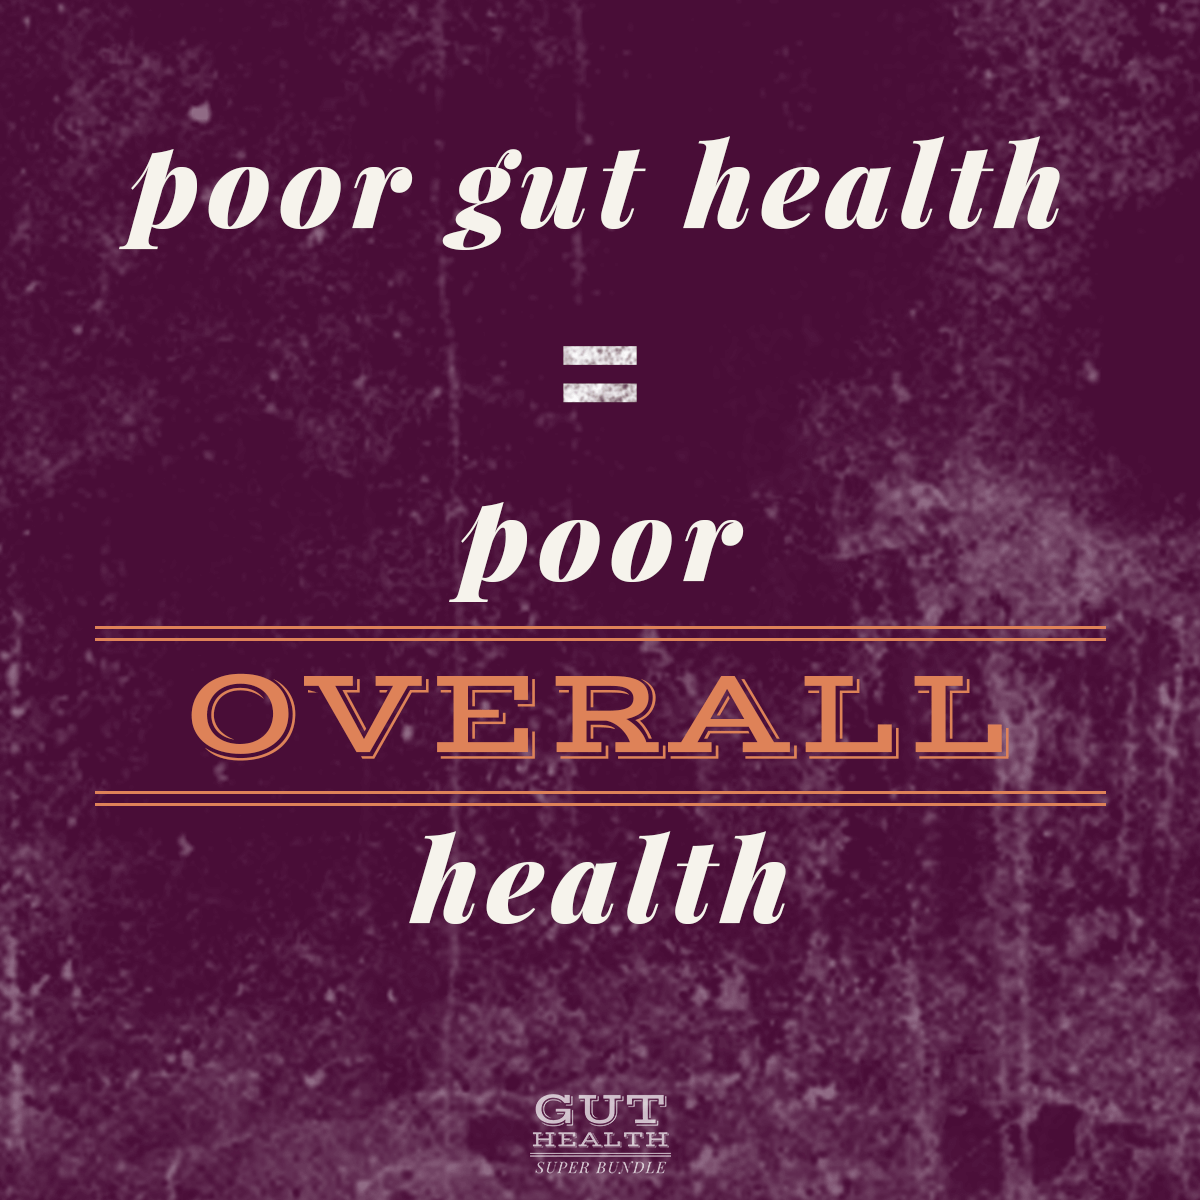 poor gut health